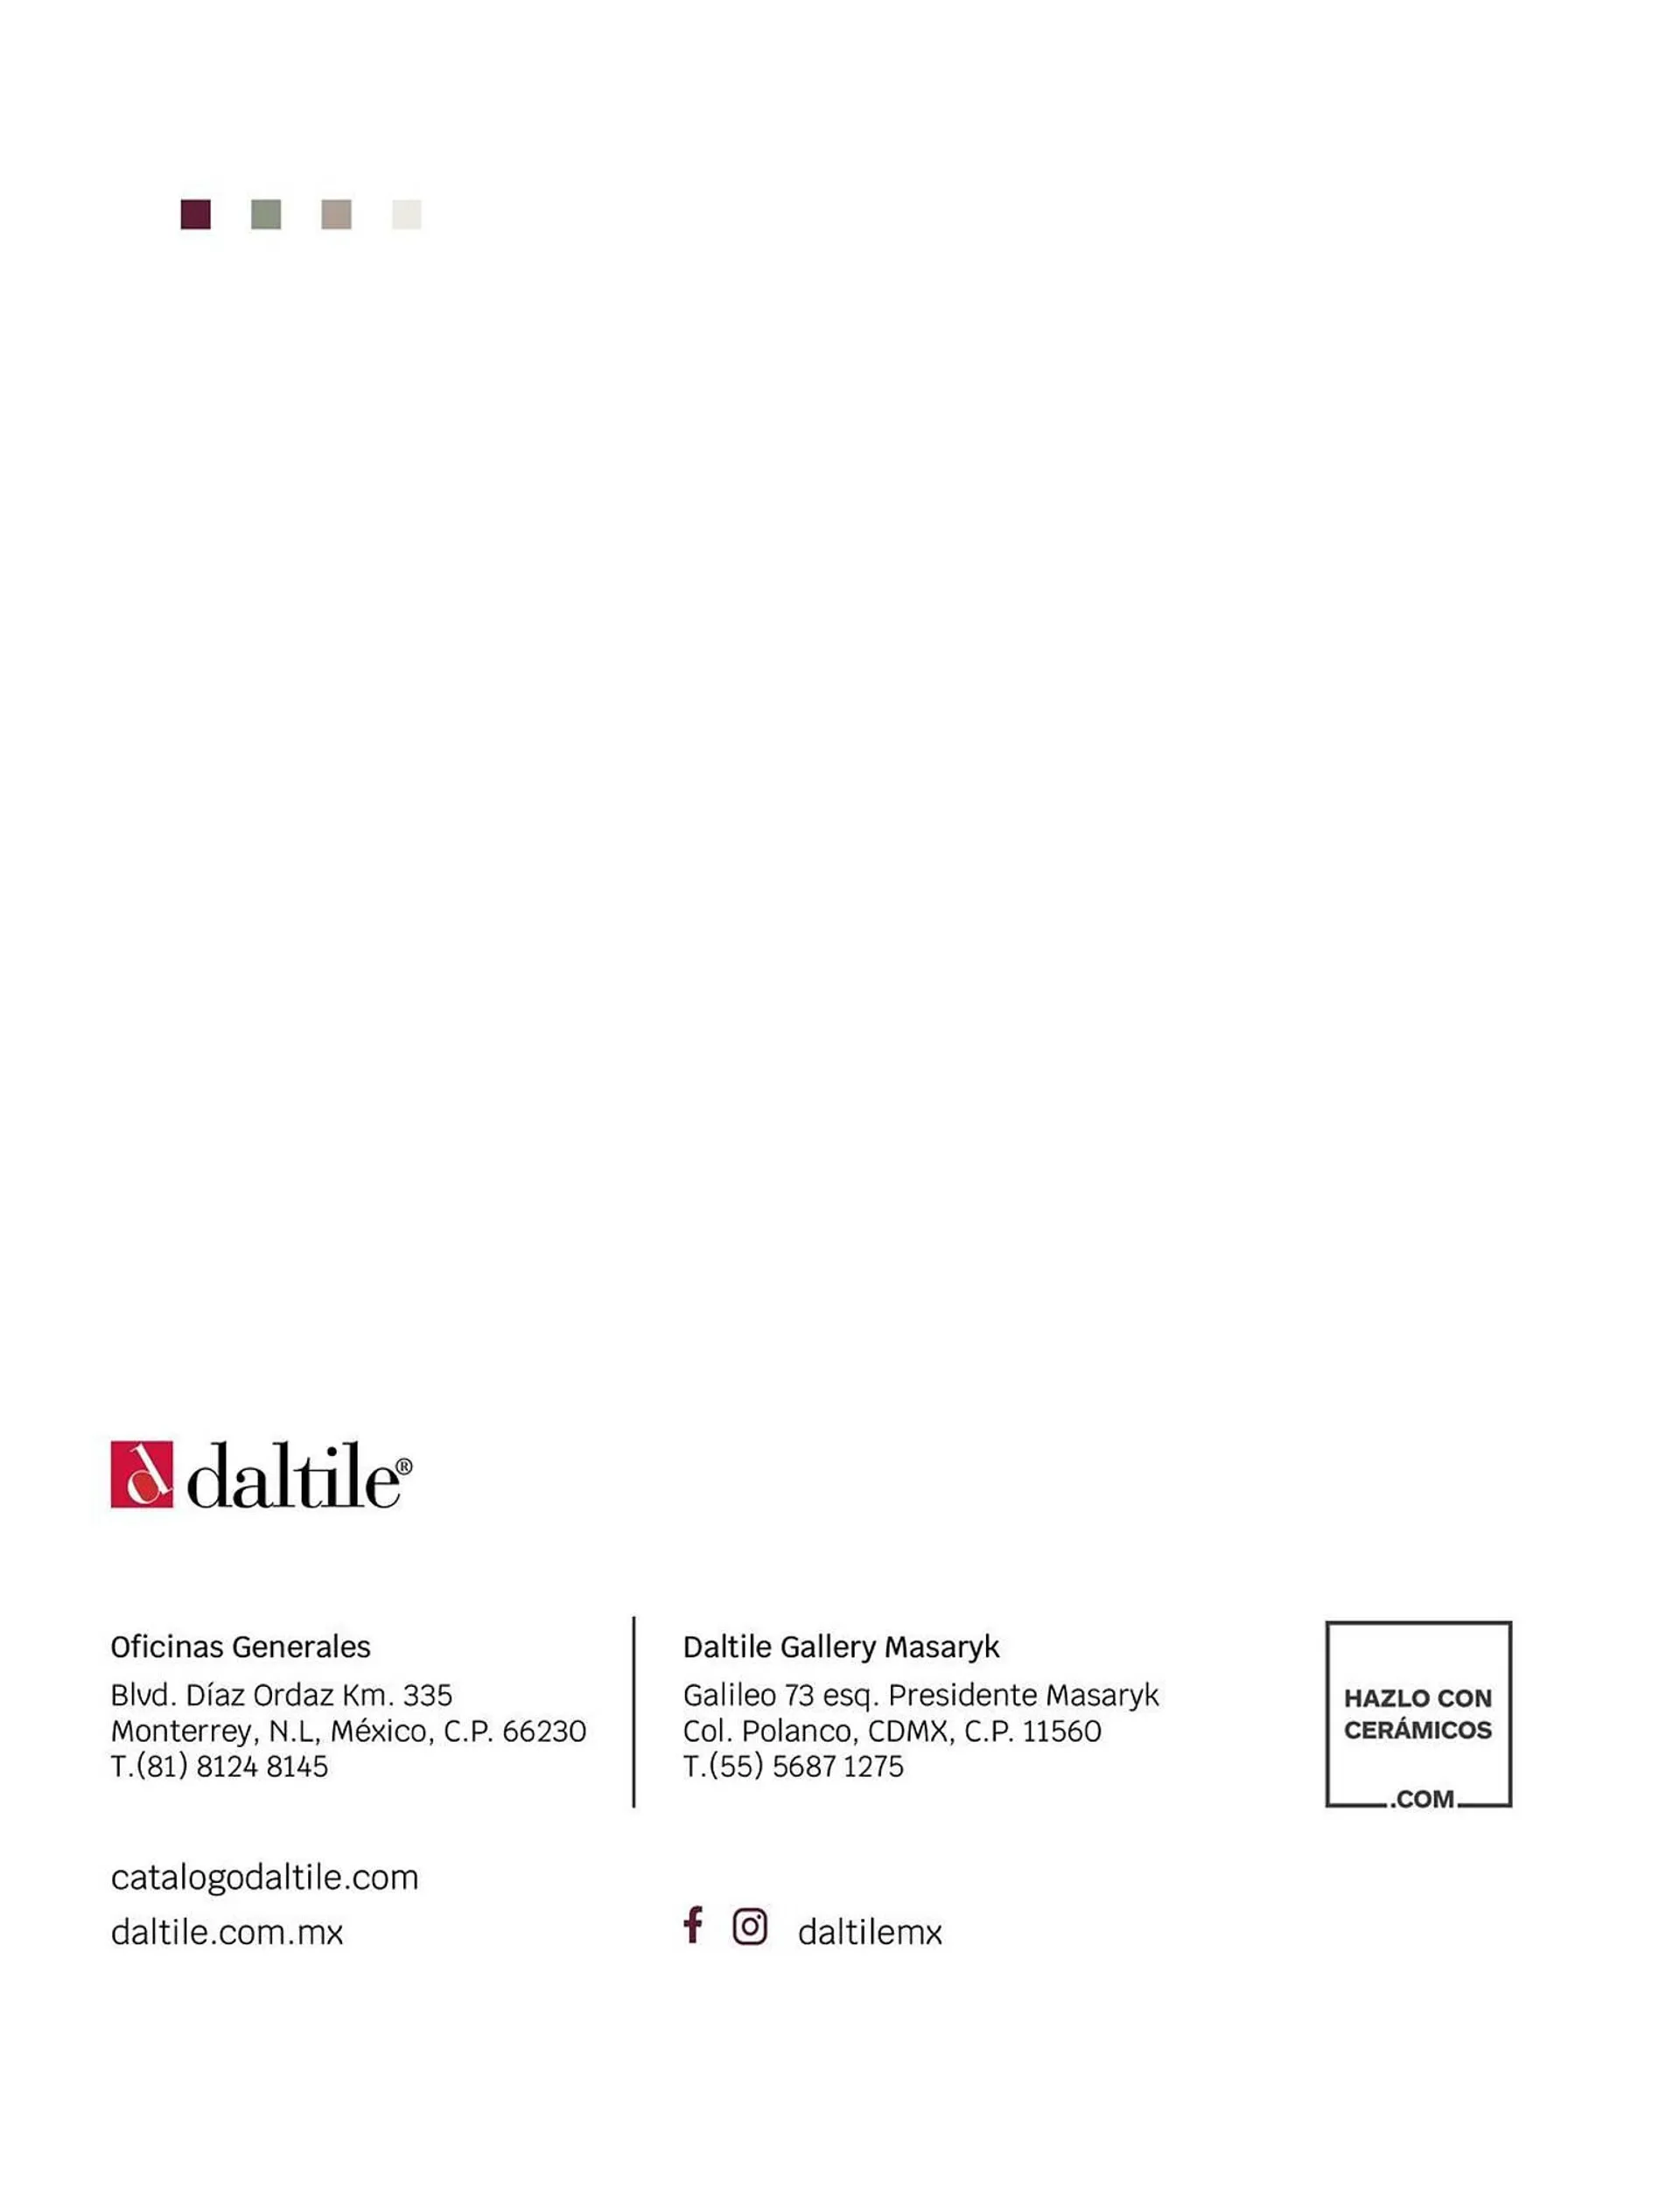 Catálogo Daltile - 332